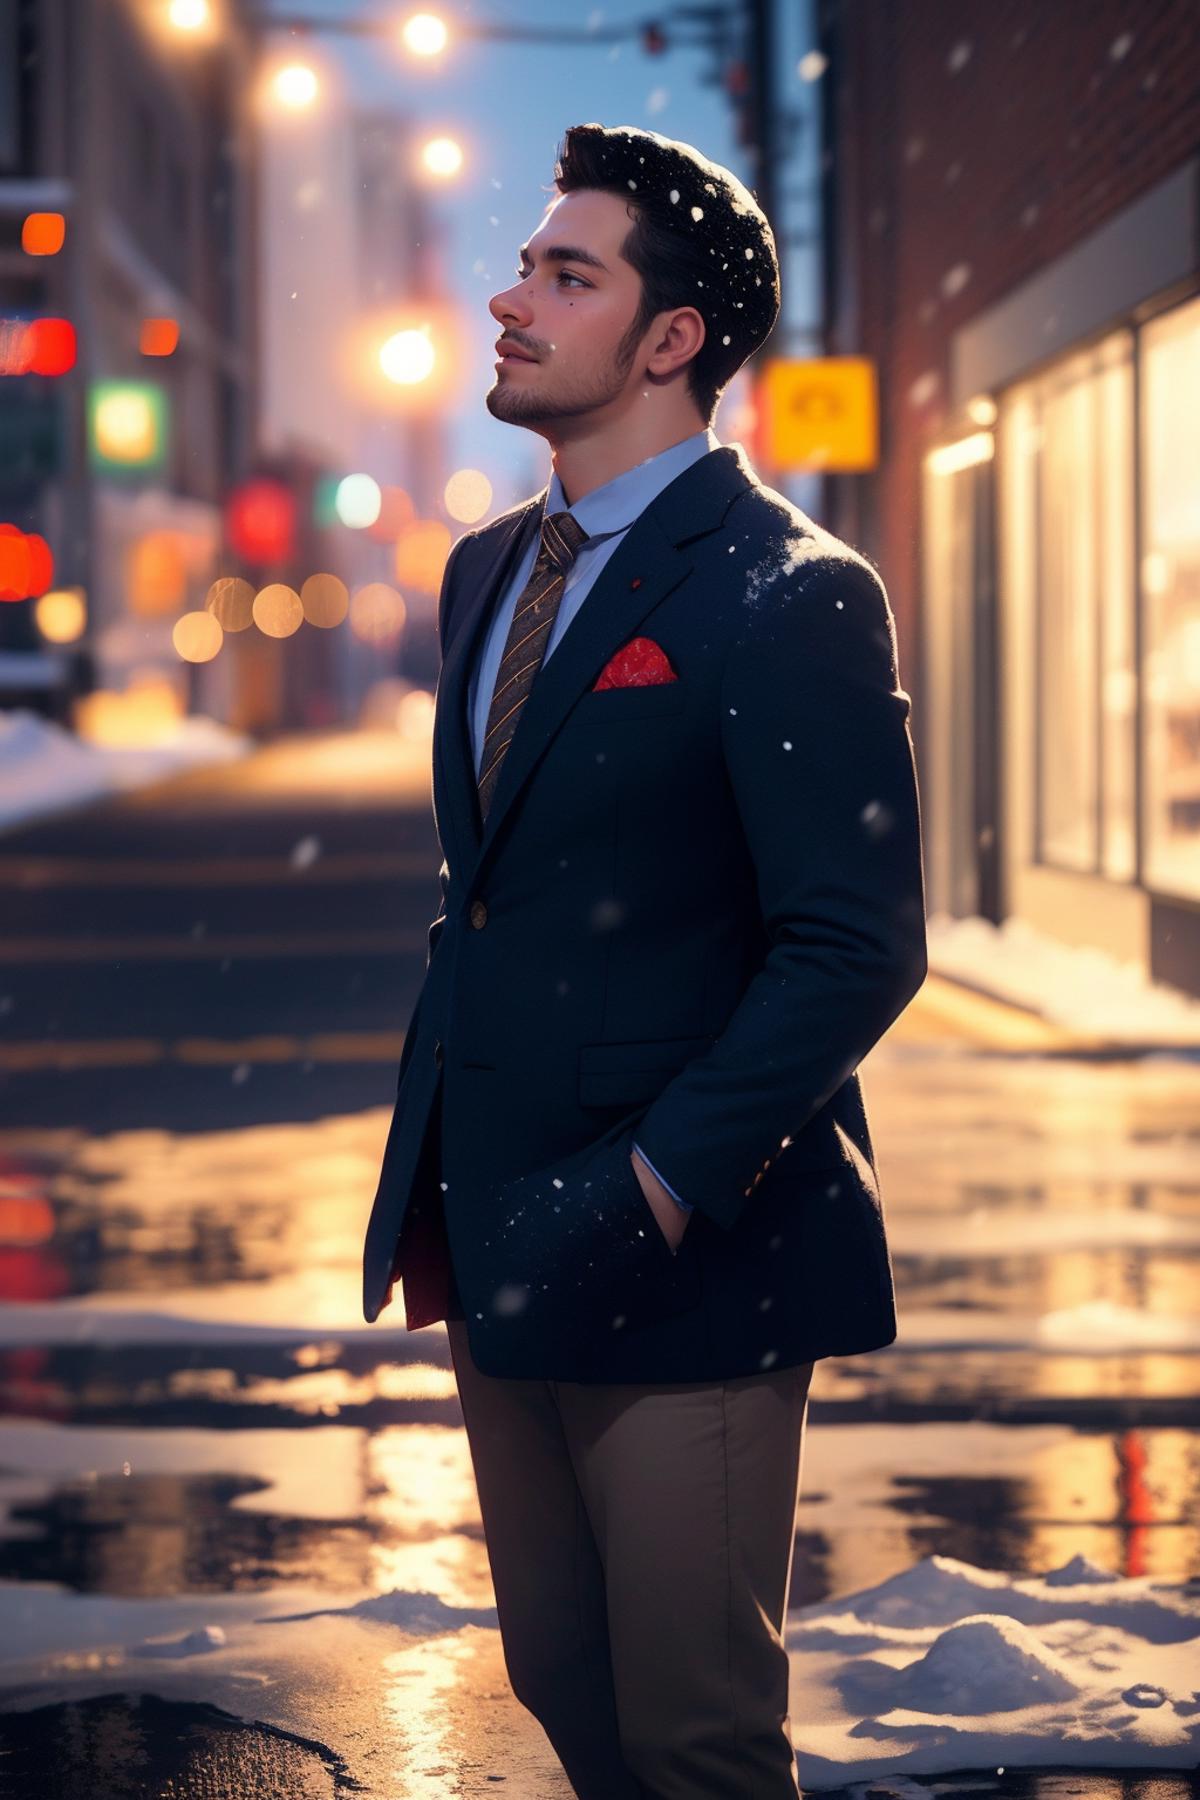 Men's Jackets & Slacks image by freckledvixon